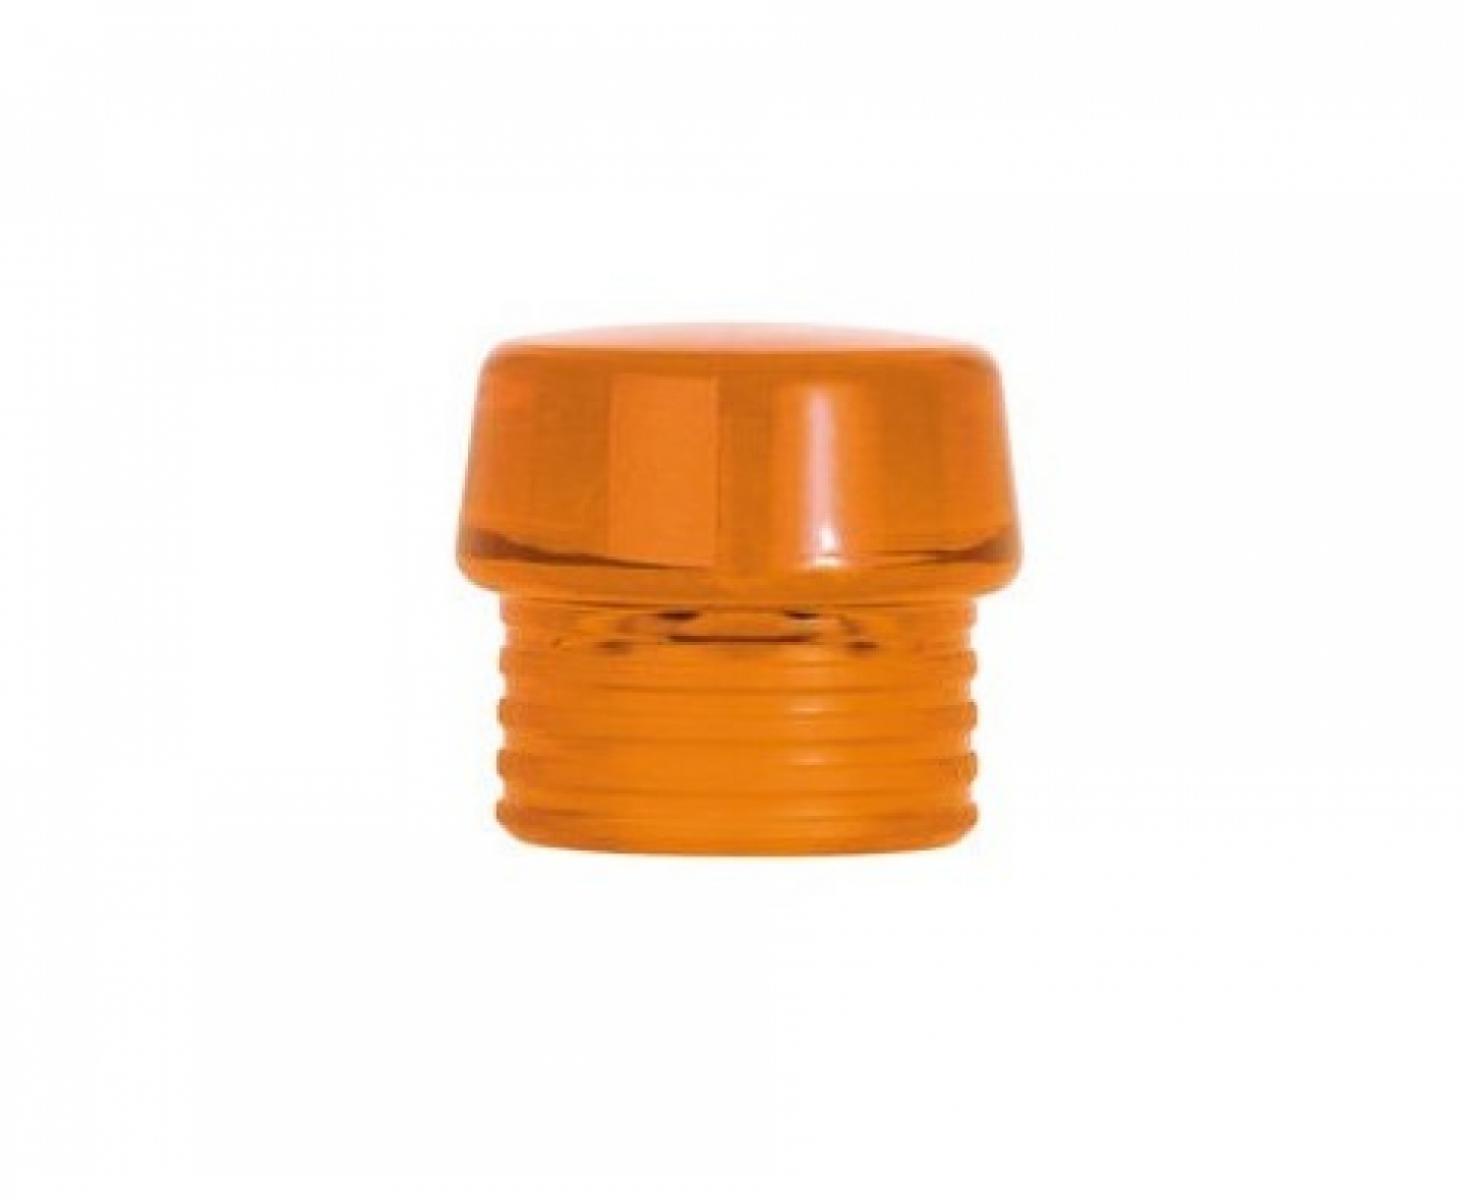 Головка оранжевая для молотка Wiha Safety 831-8 26615 из твердого ацетата целлюлозы